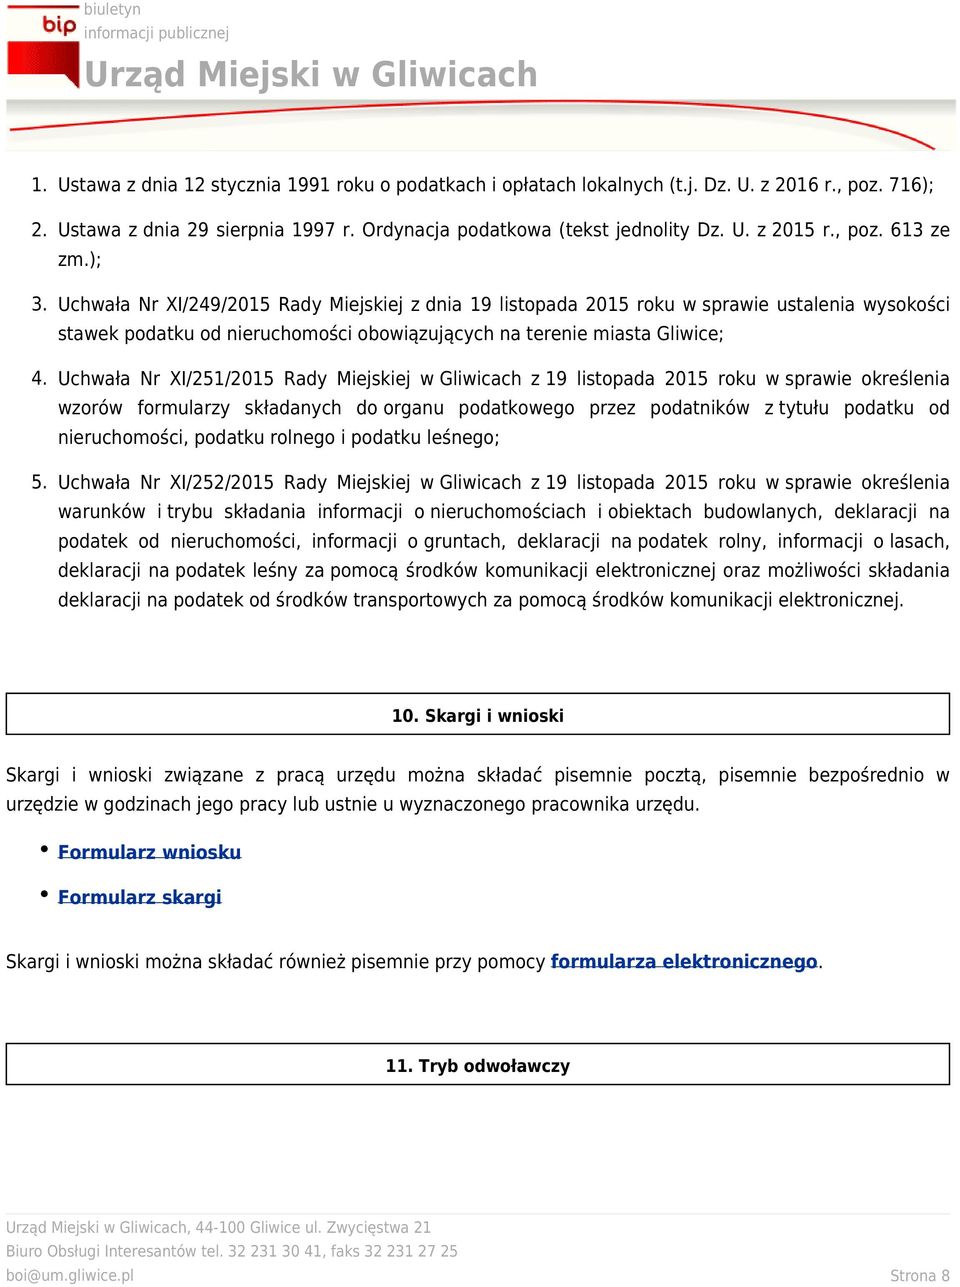 Uchwała Nr XI/251/2015 Rady Miejskiej w Gliwicach z 19 listopada 2015 roku w sprawie określenia wzorów formularzy składanych do organu podatkowego przez podatników z tytułu podatku od nieruchomości,